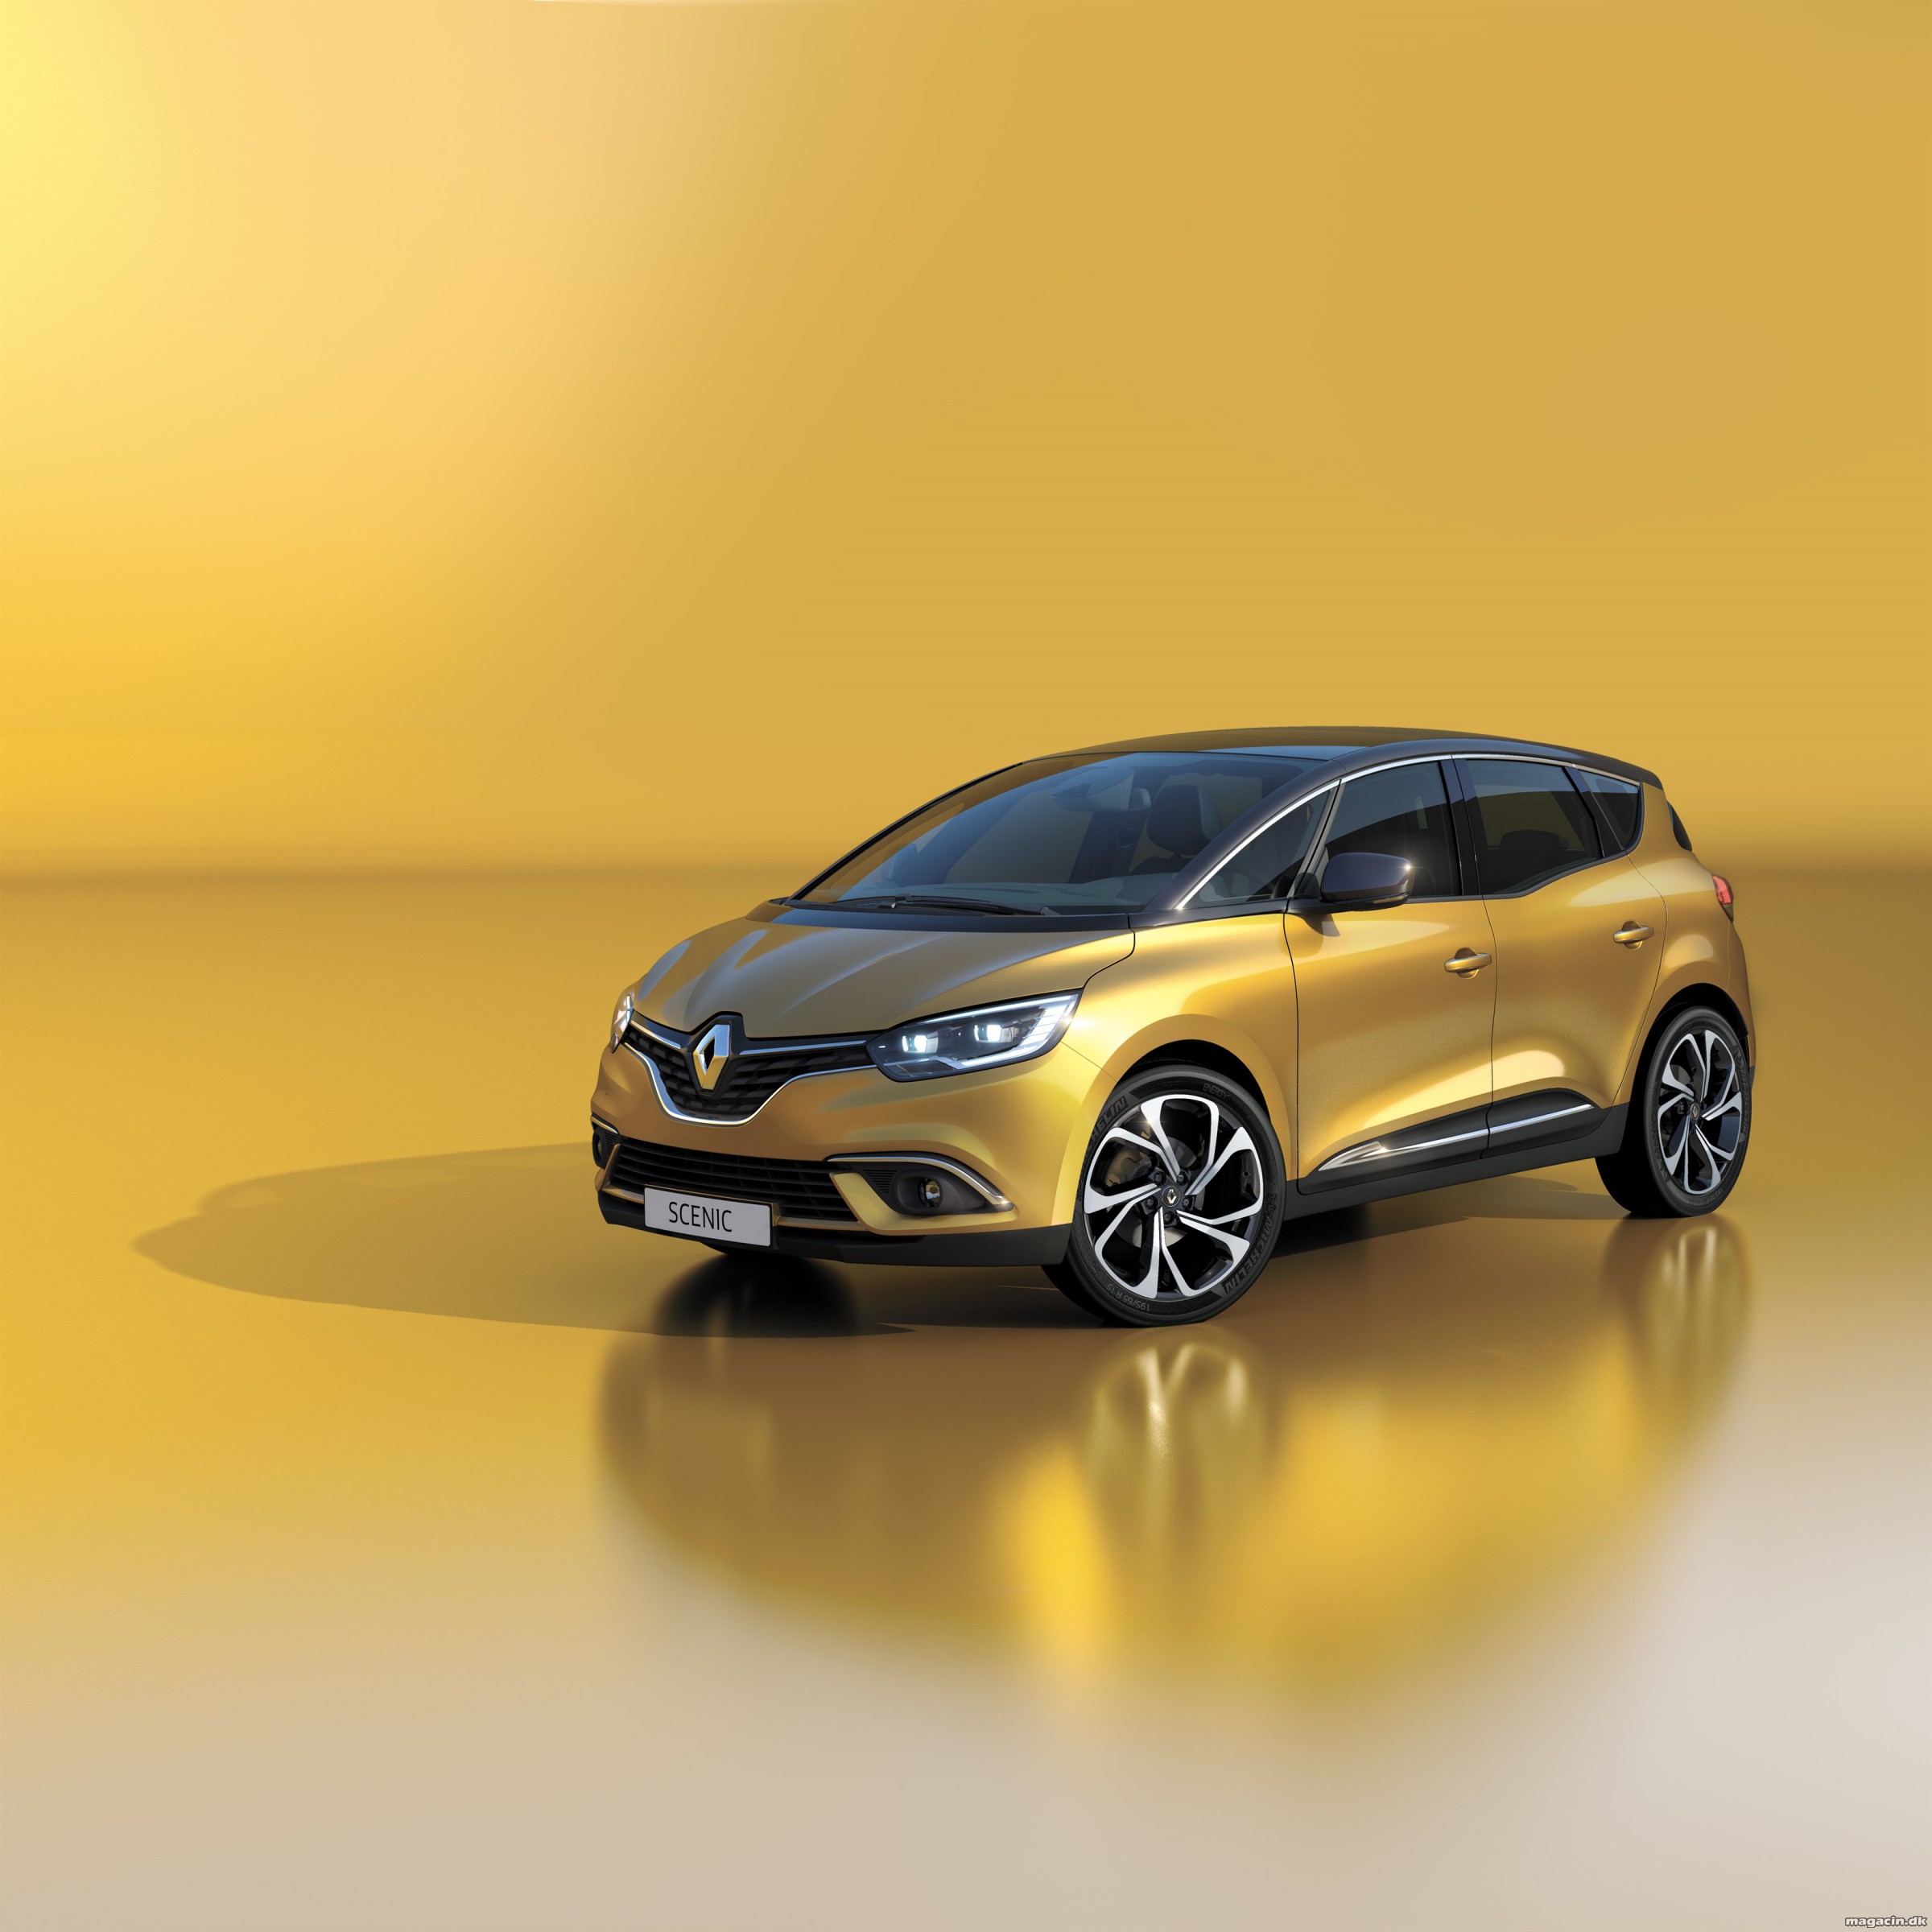 Læk afslører ny Renault Scenic før tid